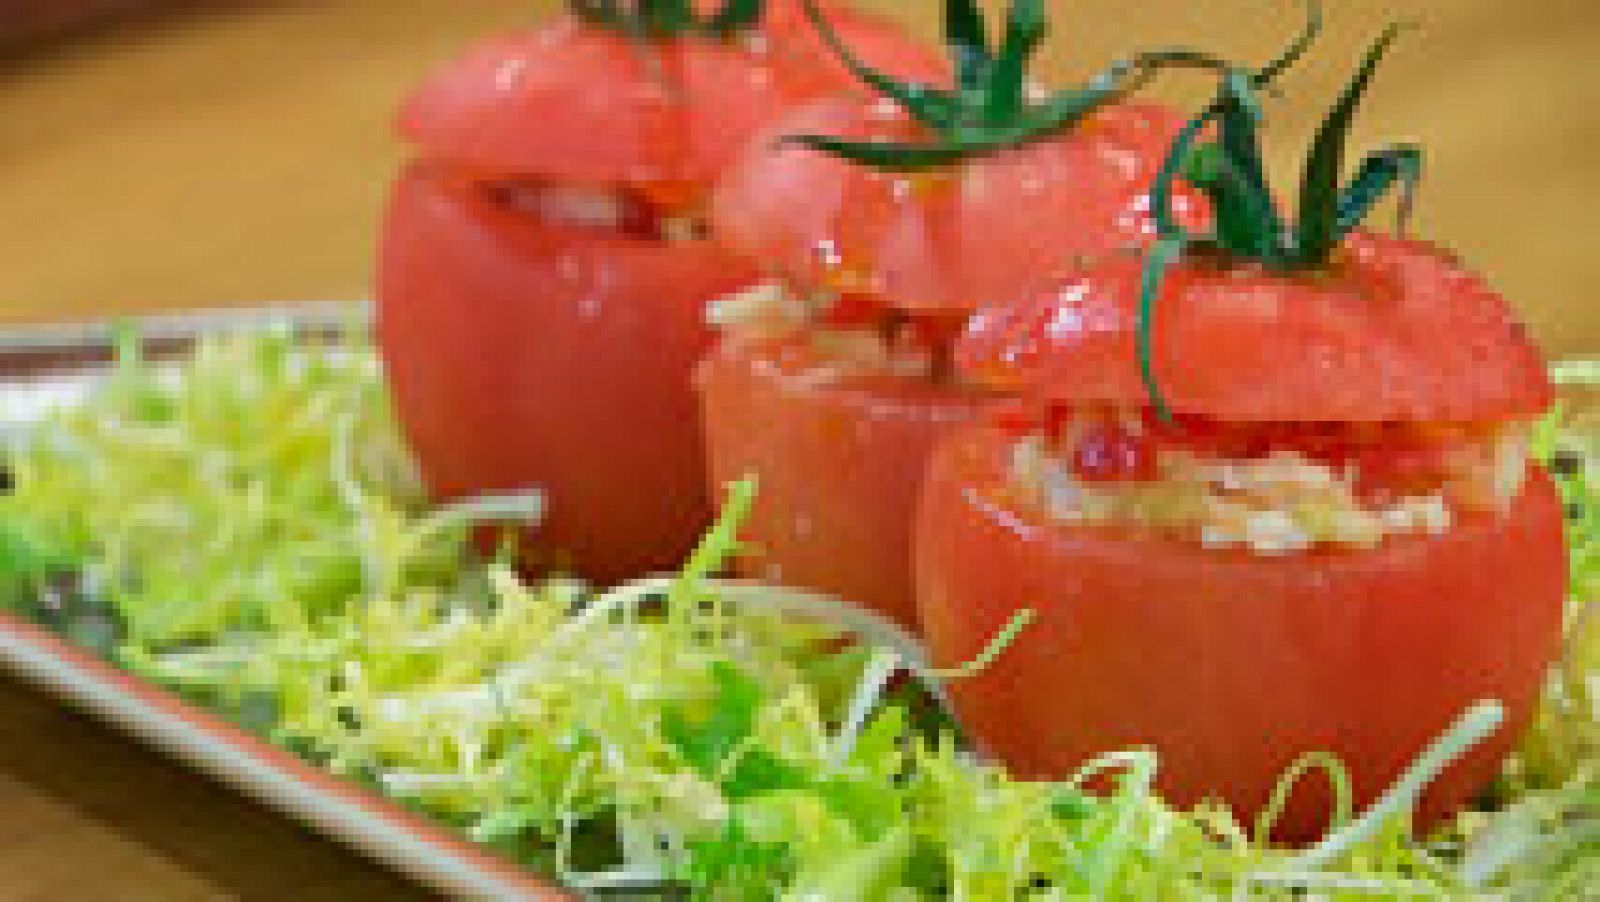 Torres en la cocina - Tomates rellenos de marisco 